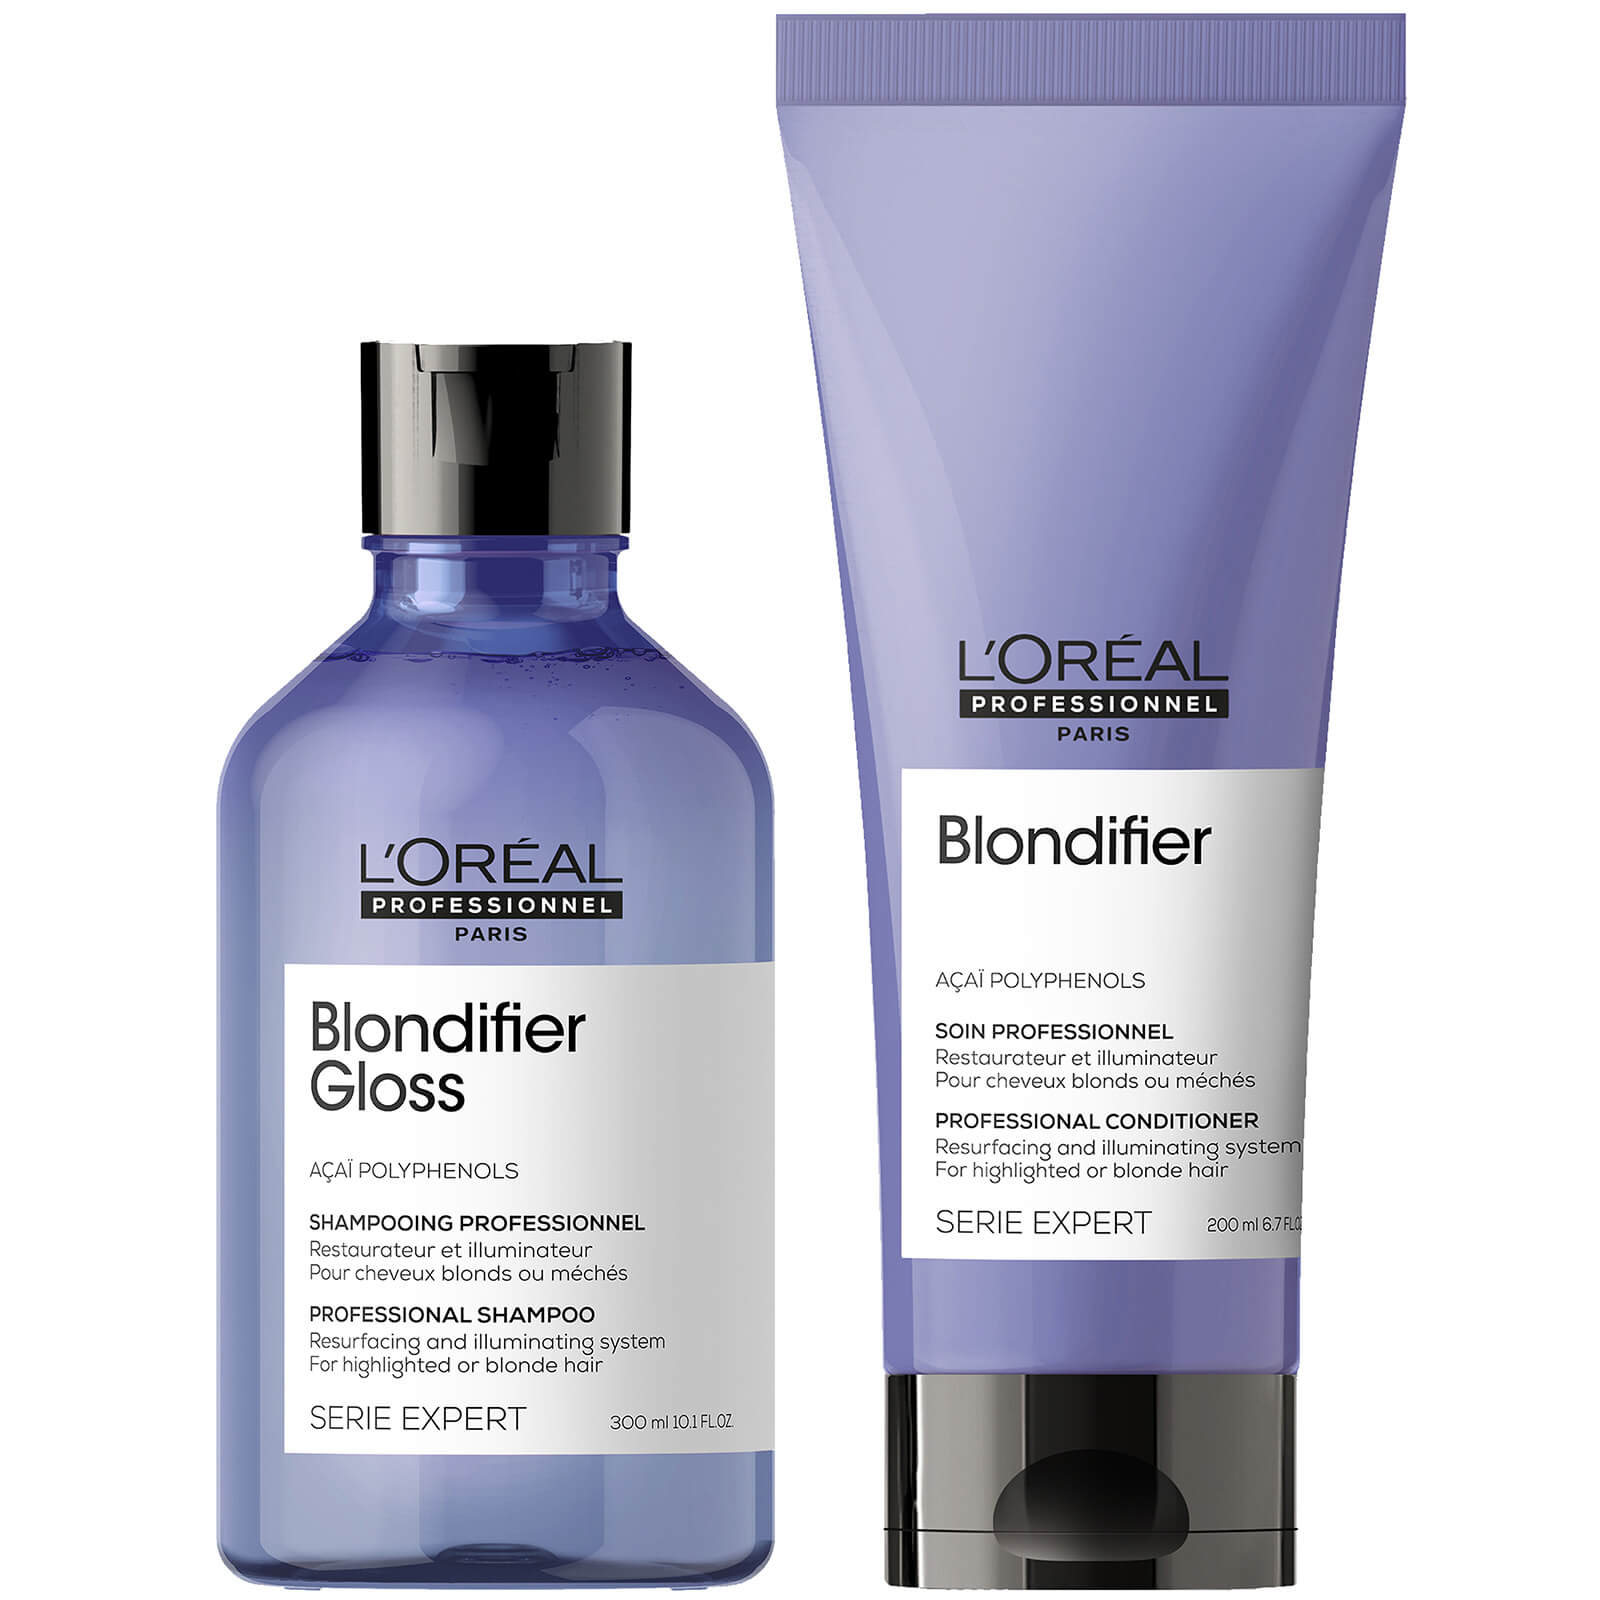 L'Oréal Professionnel Serie Expert Blondifier Gloss duo shampoo e balsamo illuminanti per capelli biondi